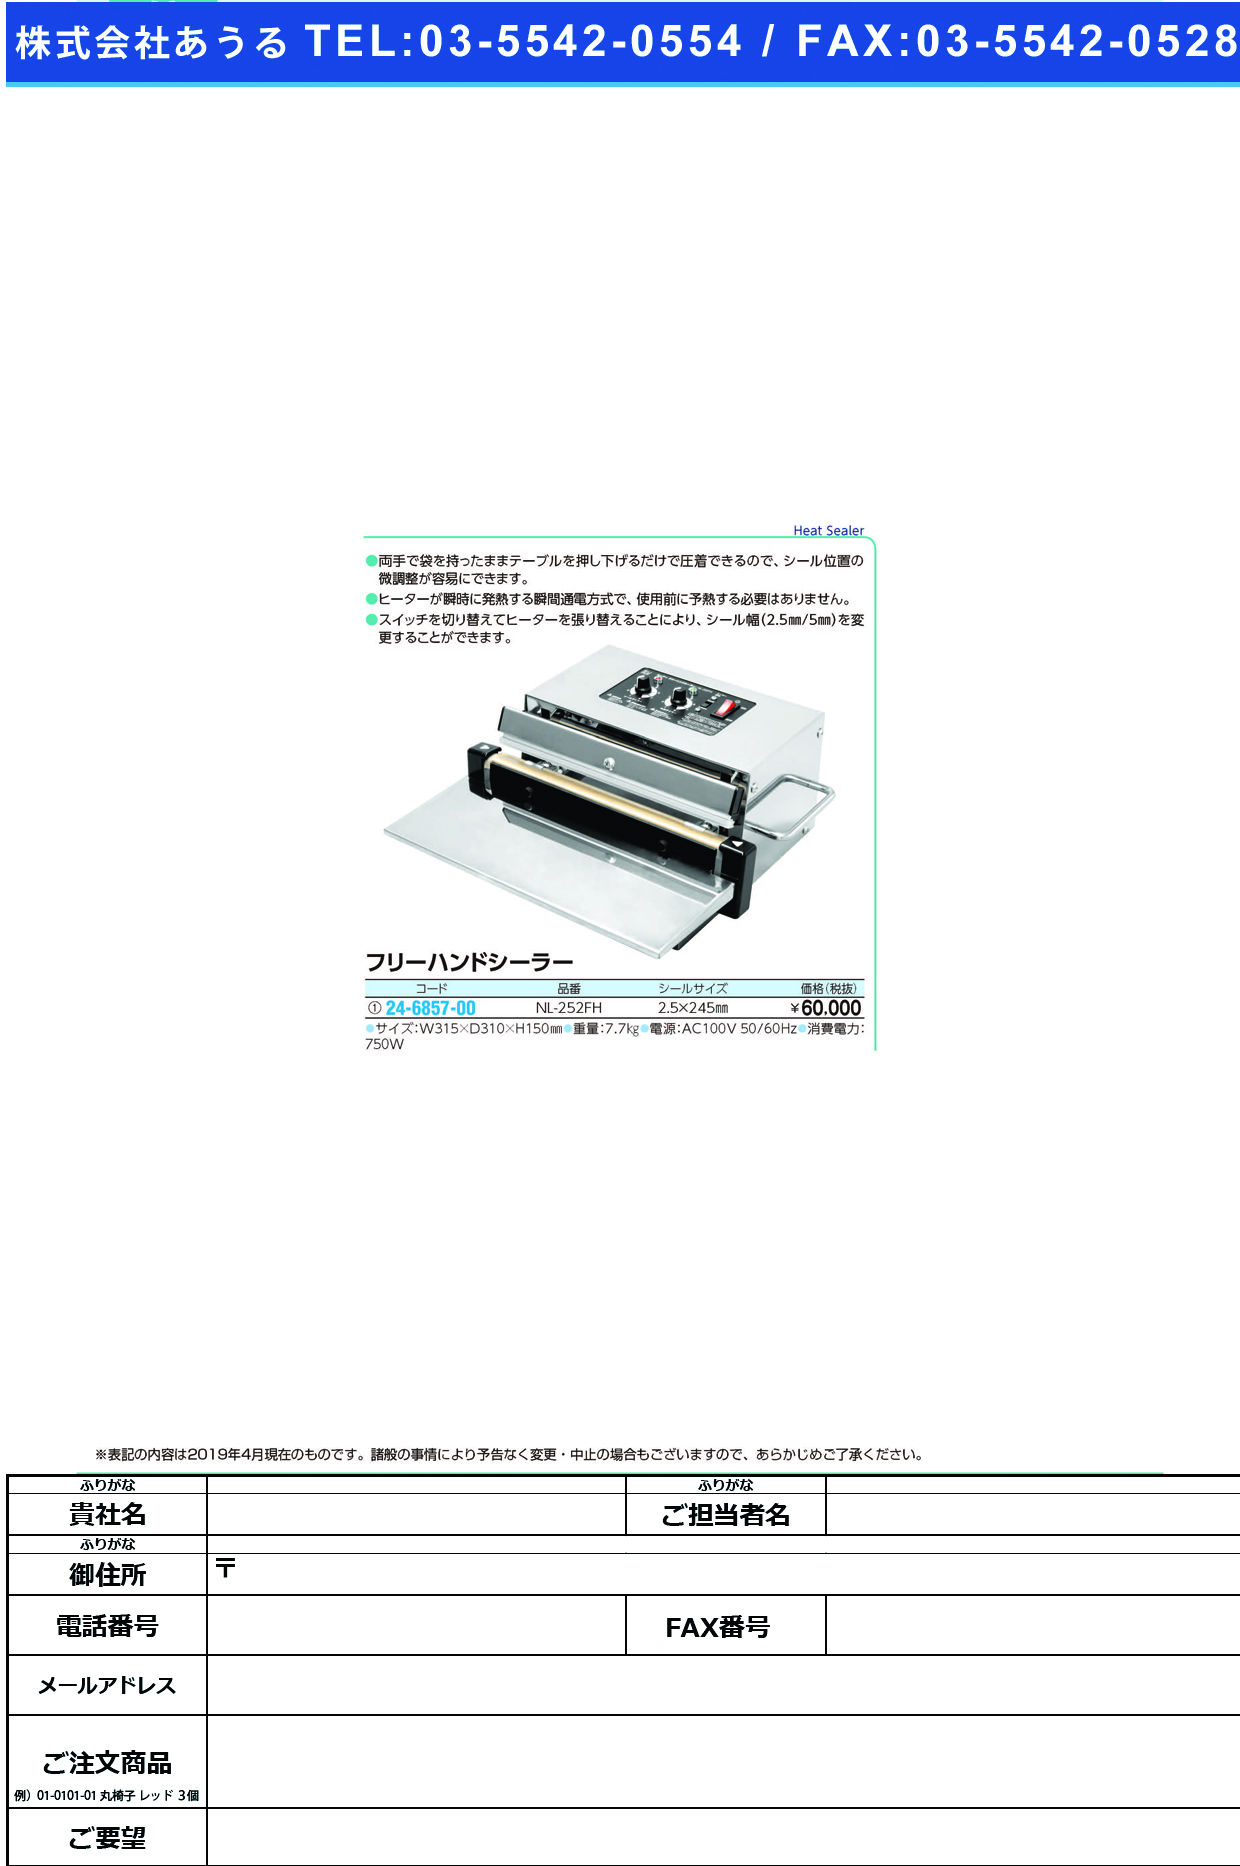 (24-6857-00)フリーハンドシーラー NL-252FH ﾌﾘｰﾊﾝﾄﾞｼｰﾗｰ(石崎電機製作所)【1台単位】【2019年カタログ商品】